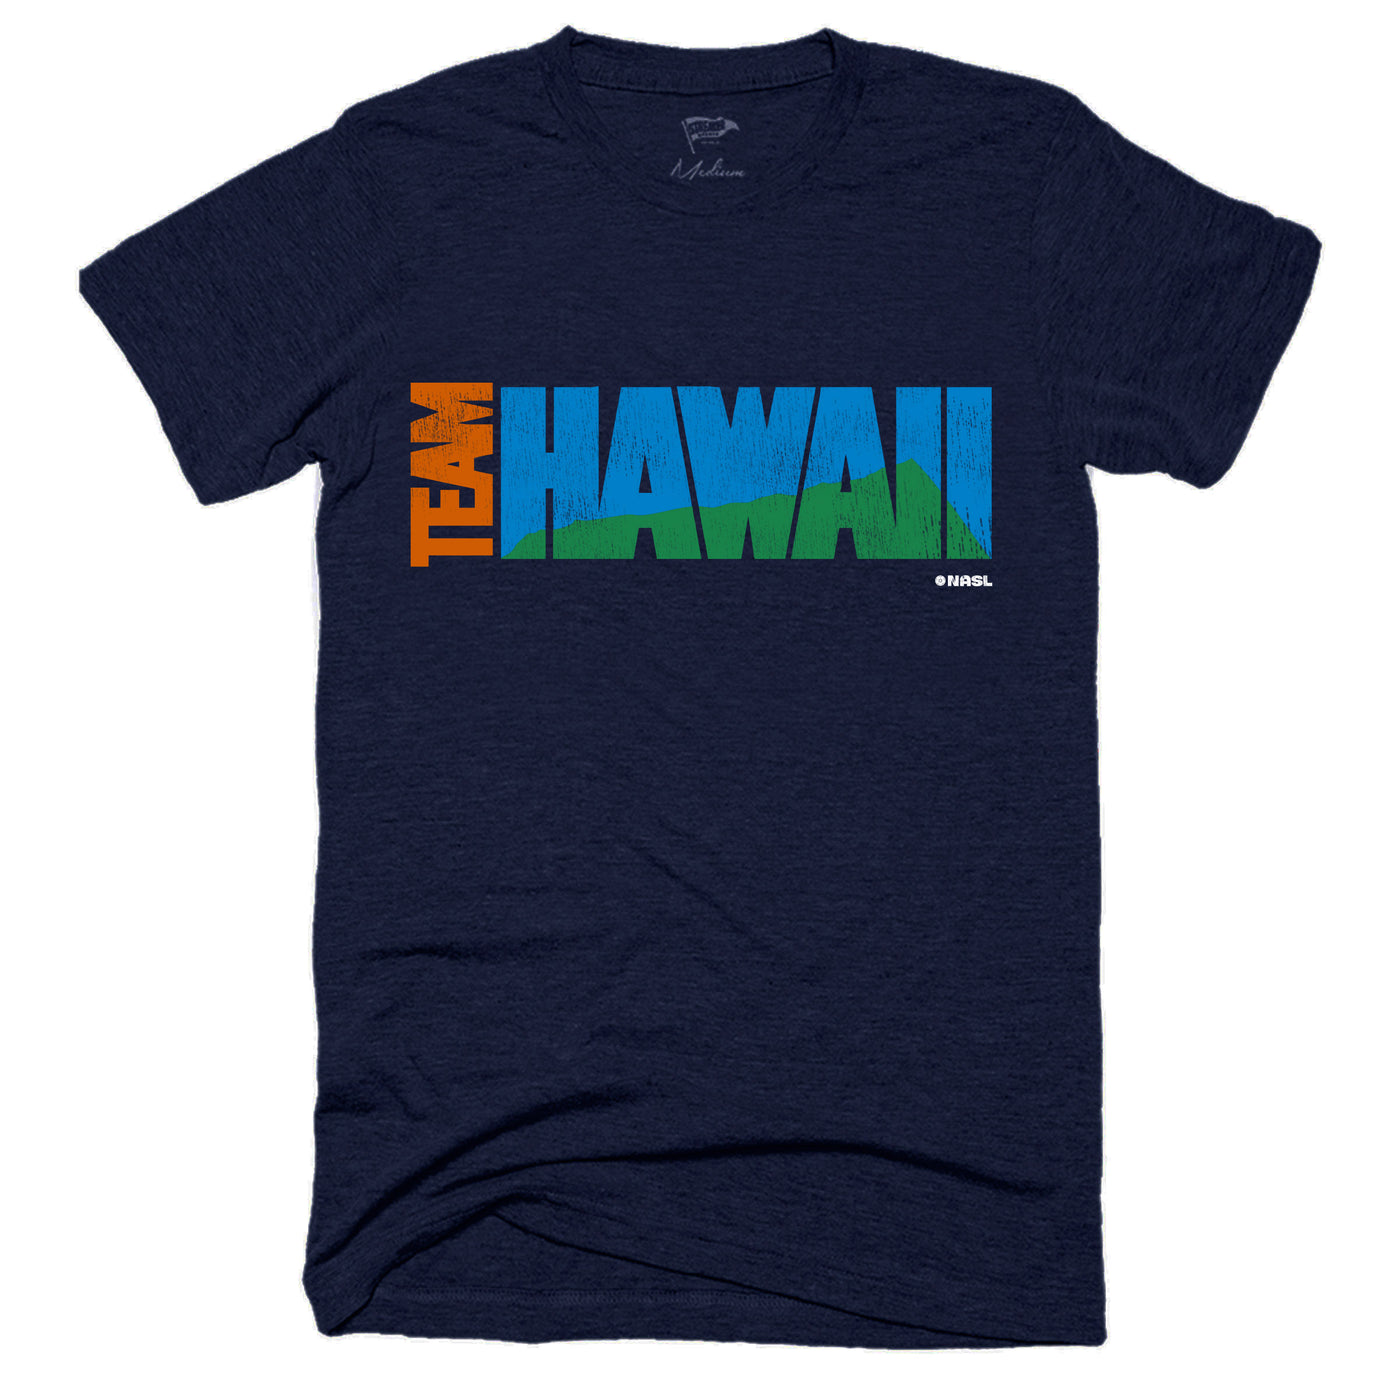 1977 Team Hawaii Tee - Streaker Sports